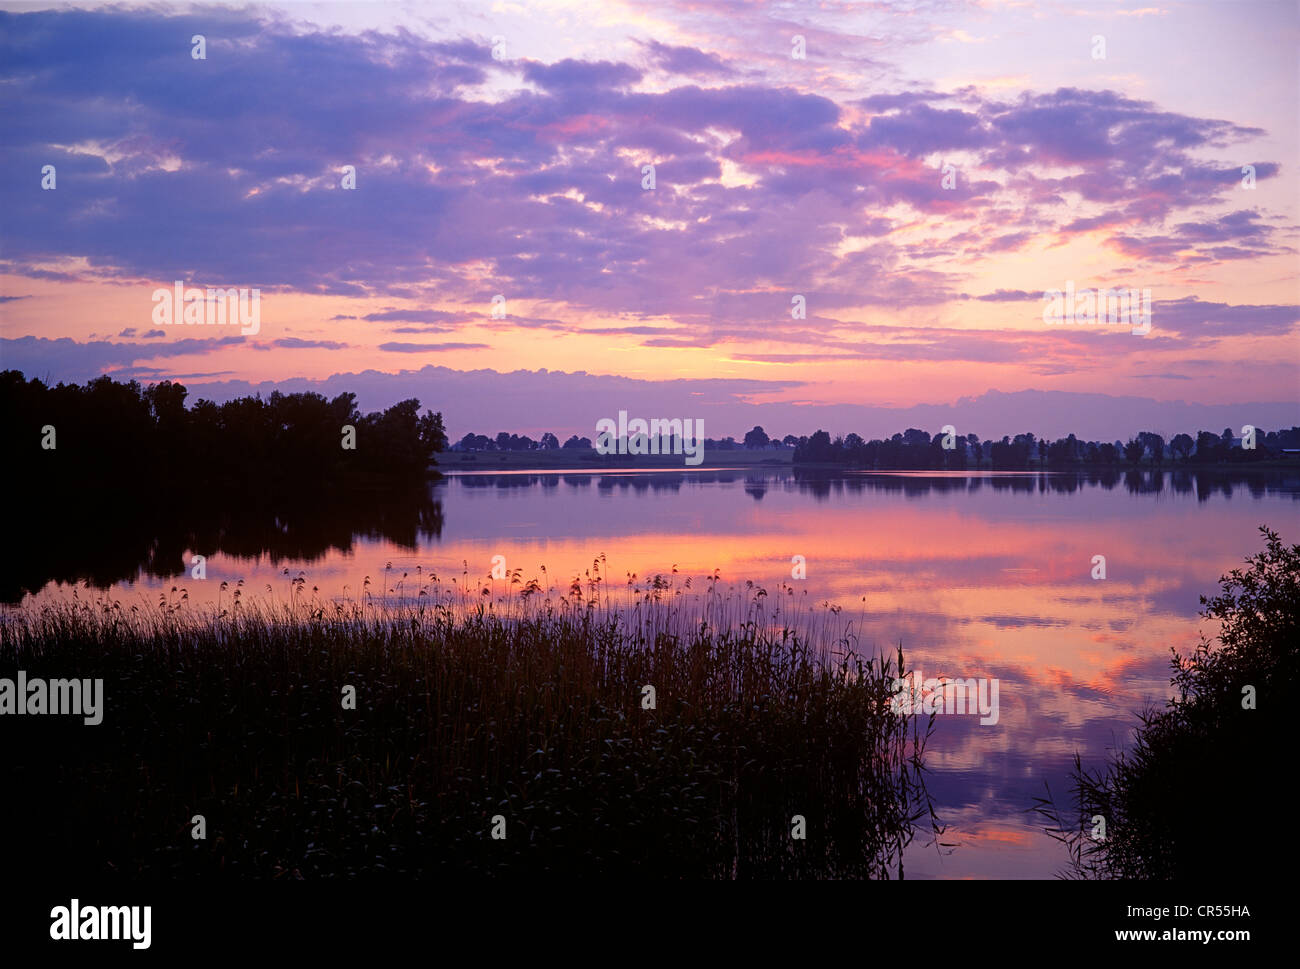 Evening light over the masurian lake Kolmowo in Poland. Abendlicht über dem Kolmowo See in Masuren. Stock Photo